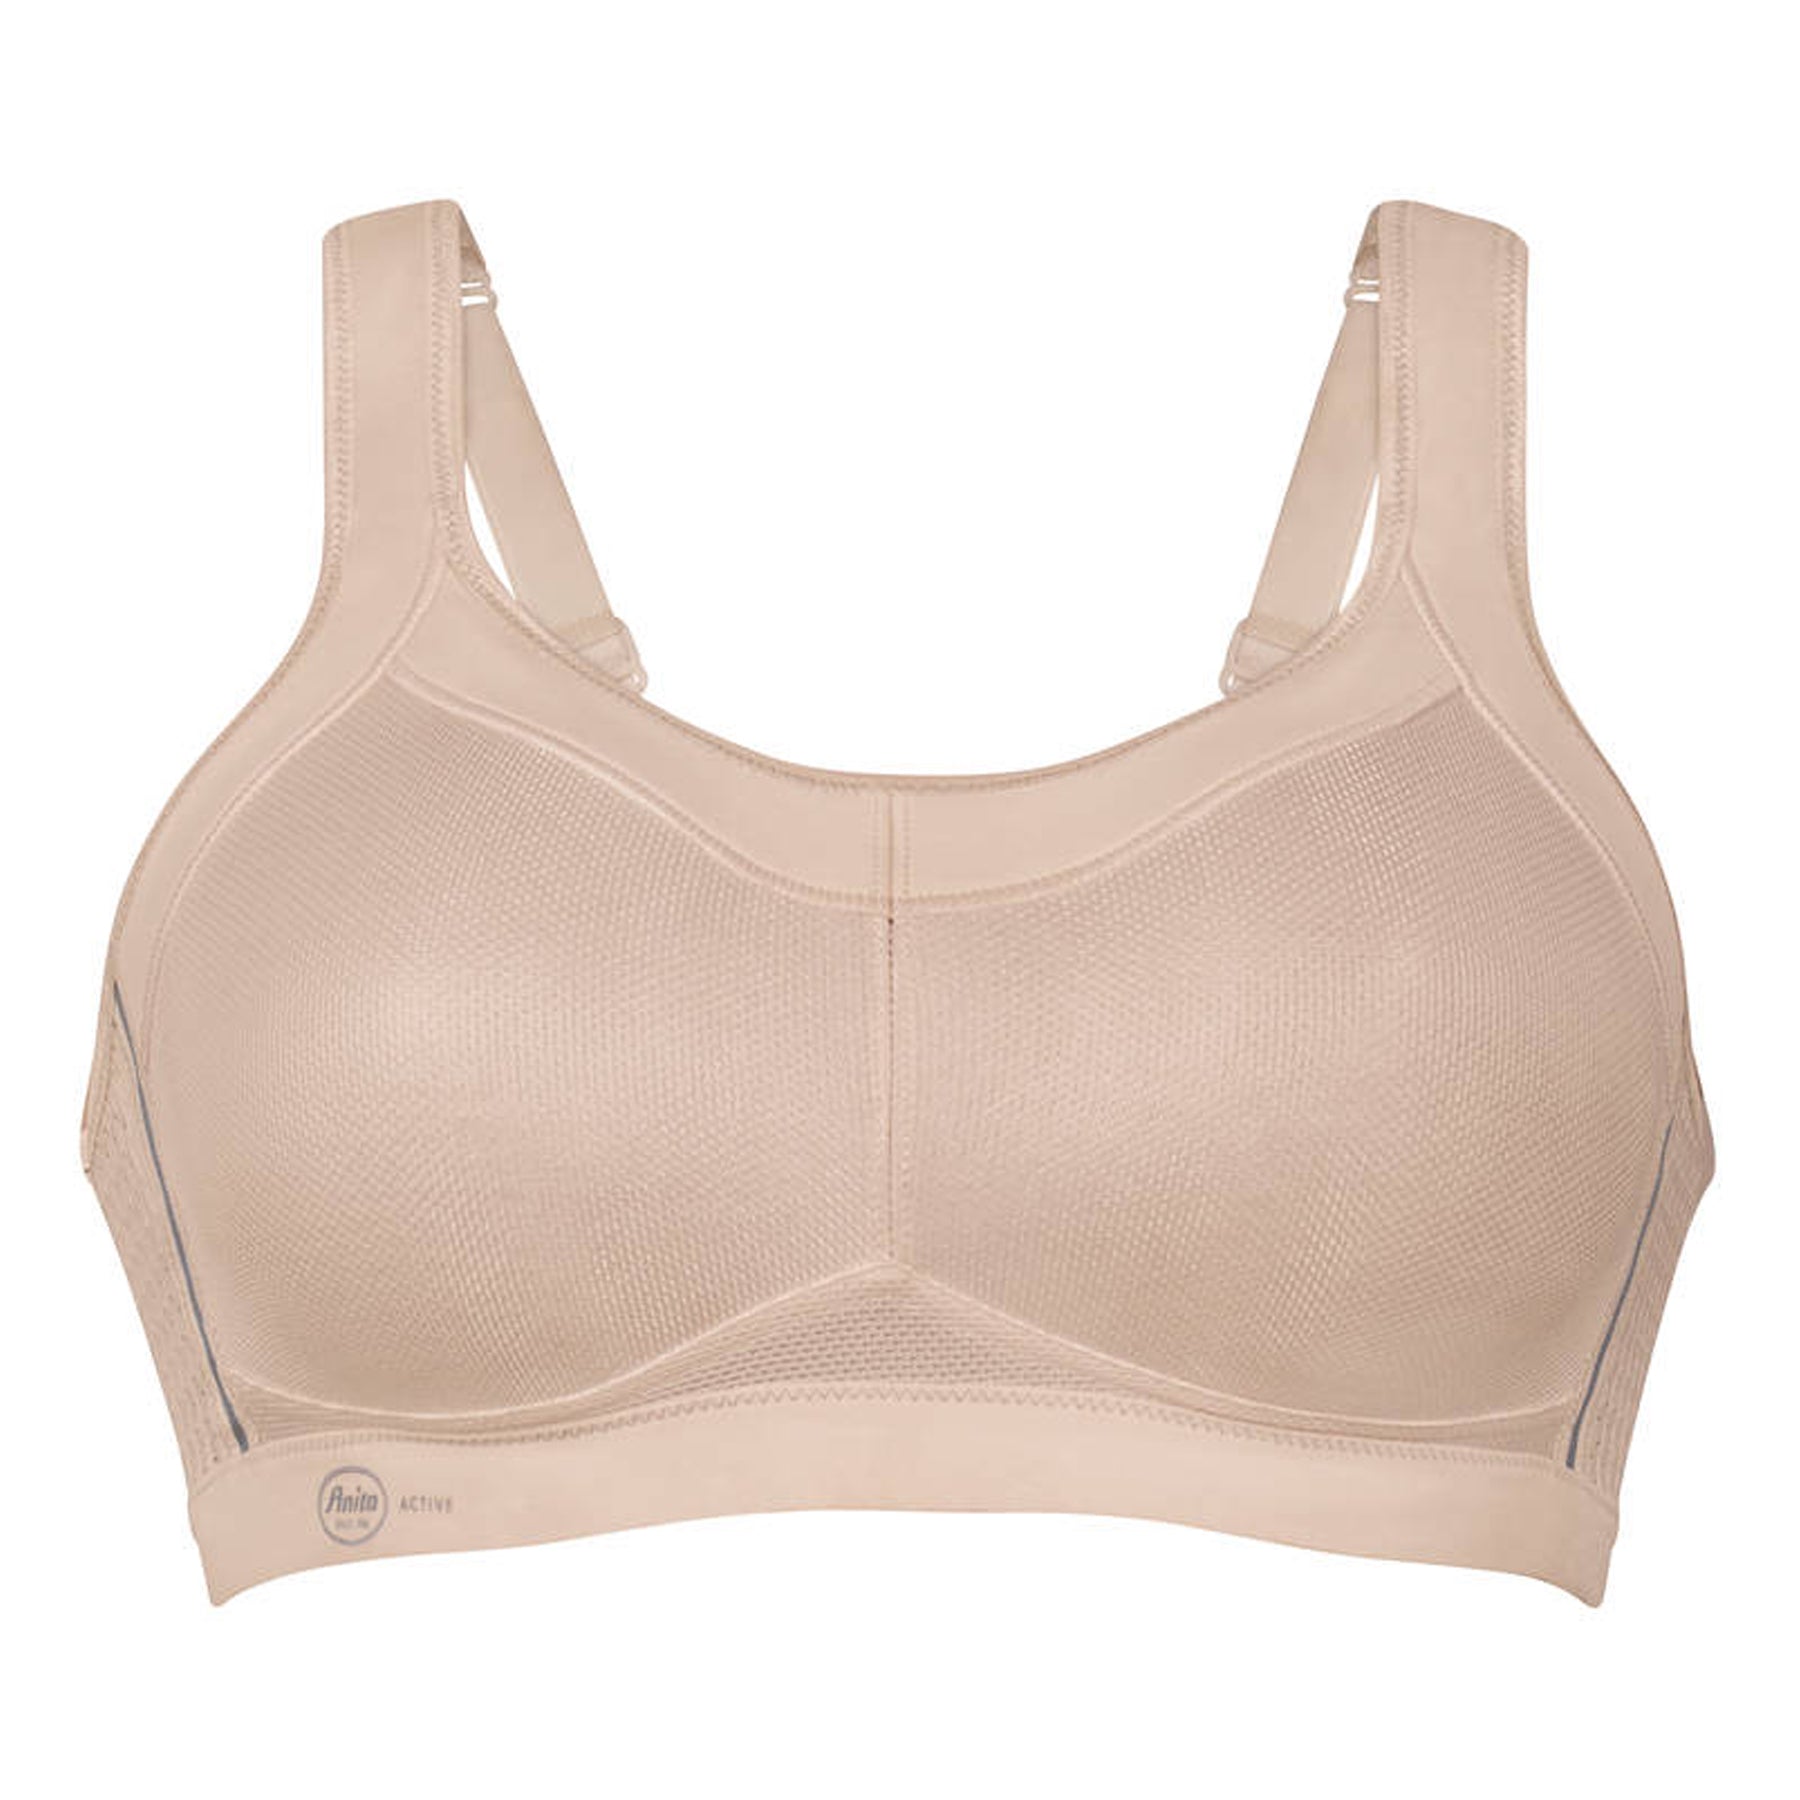 AVIVA ShapeUP Adjustable & Comfortable sport bra (81-6107) – AVIVA